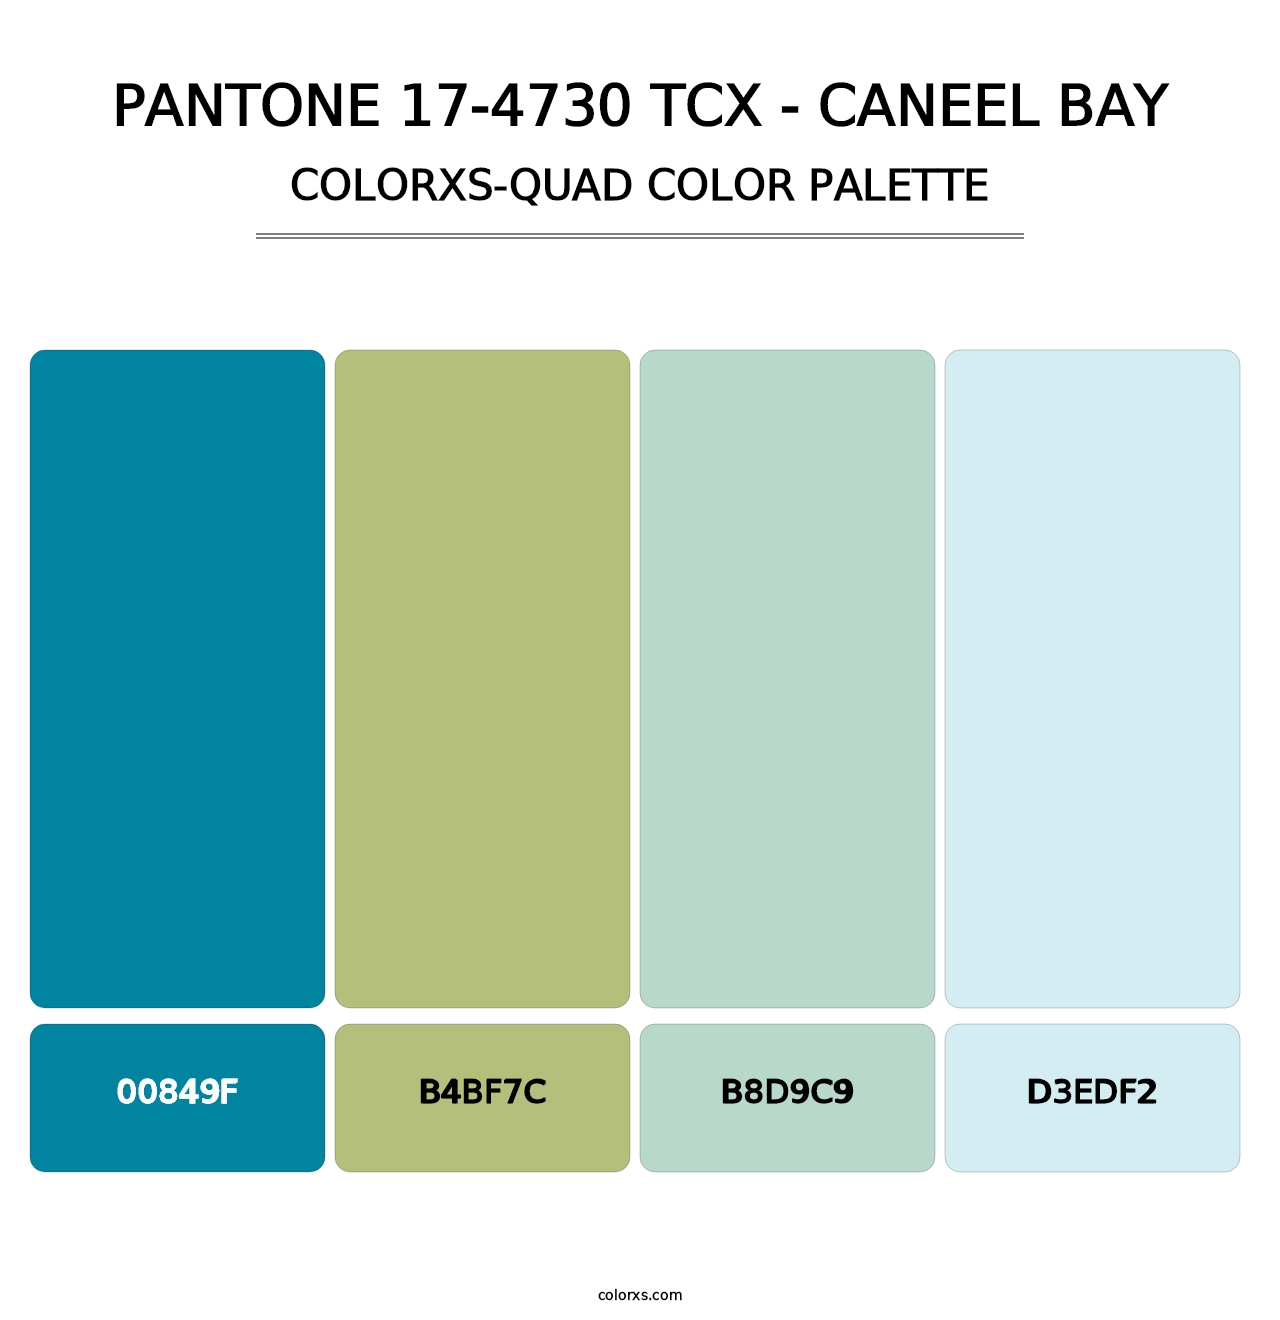 PANTONE 17-4730 TCX - Caneel Bay - Colorxs Quad Palette